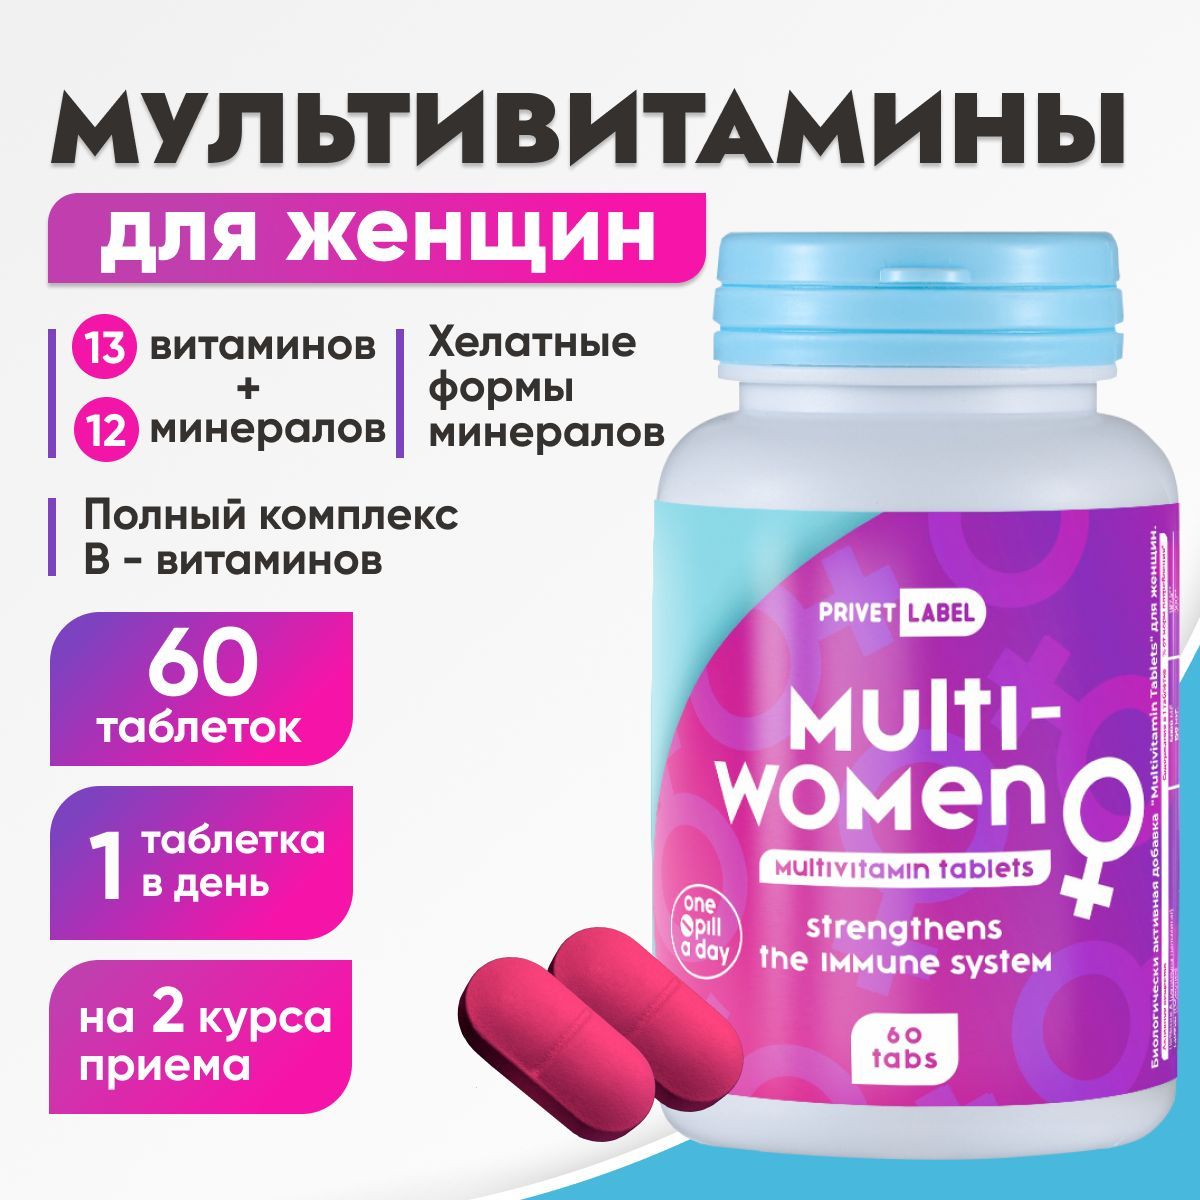 Коллаген сибирское здоровье купить. Мультивитаминный комплекс для женщин. Комплекс витаминов для женщин. Мультивитамин комплекс. Multi Vitamin Complex для женщин.